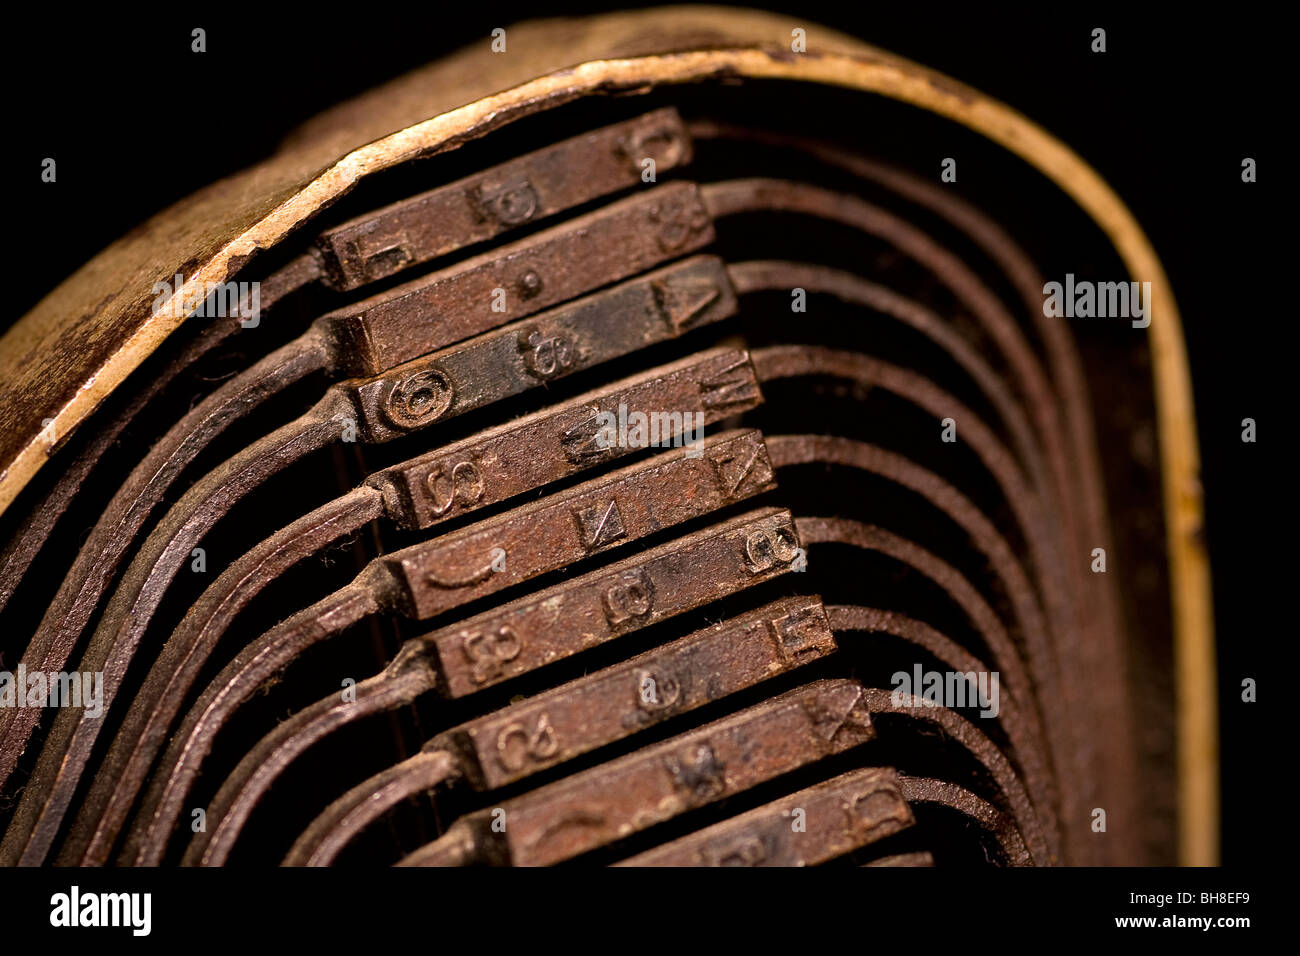 Antike Schreibmaschine - Typebars verschiedene Zeichen, Zahlen & Buchstaben Stockfoto